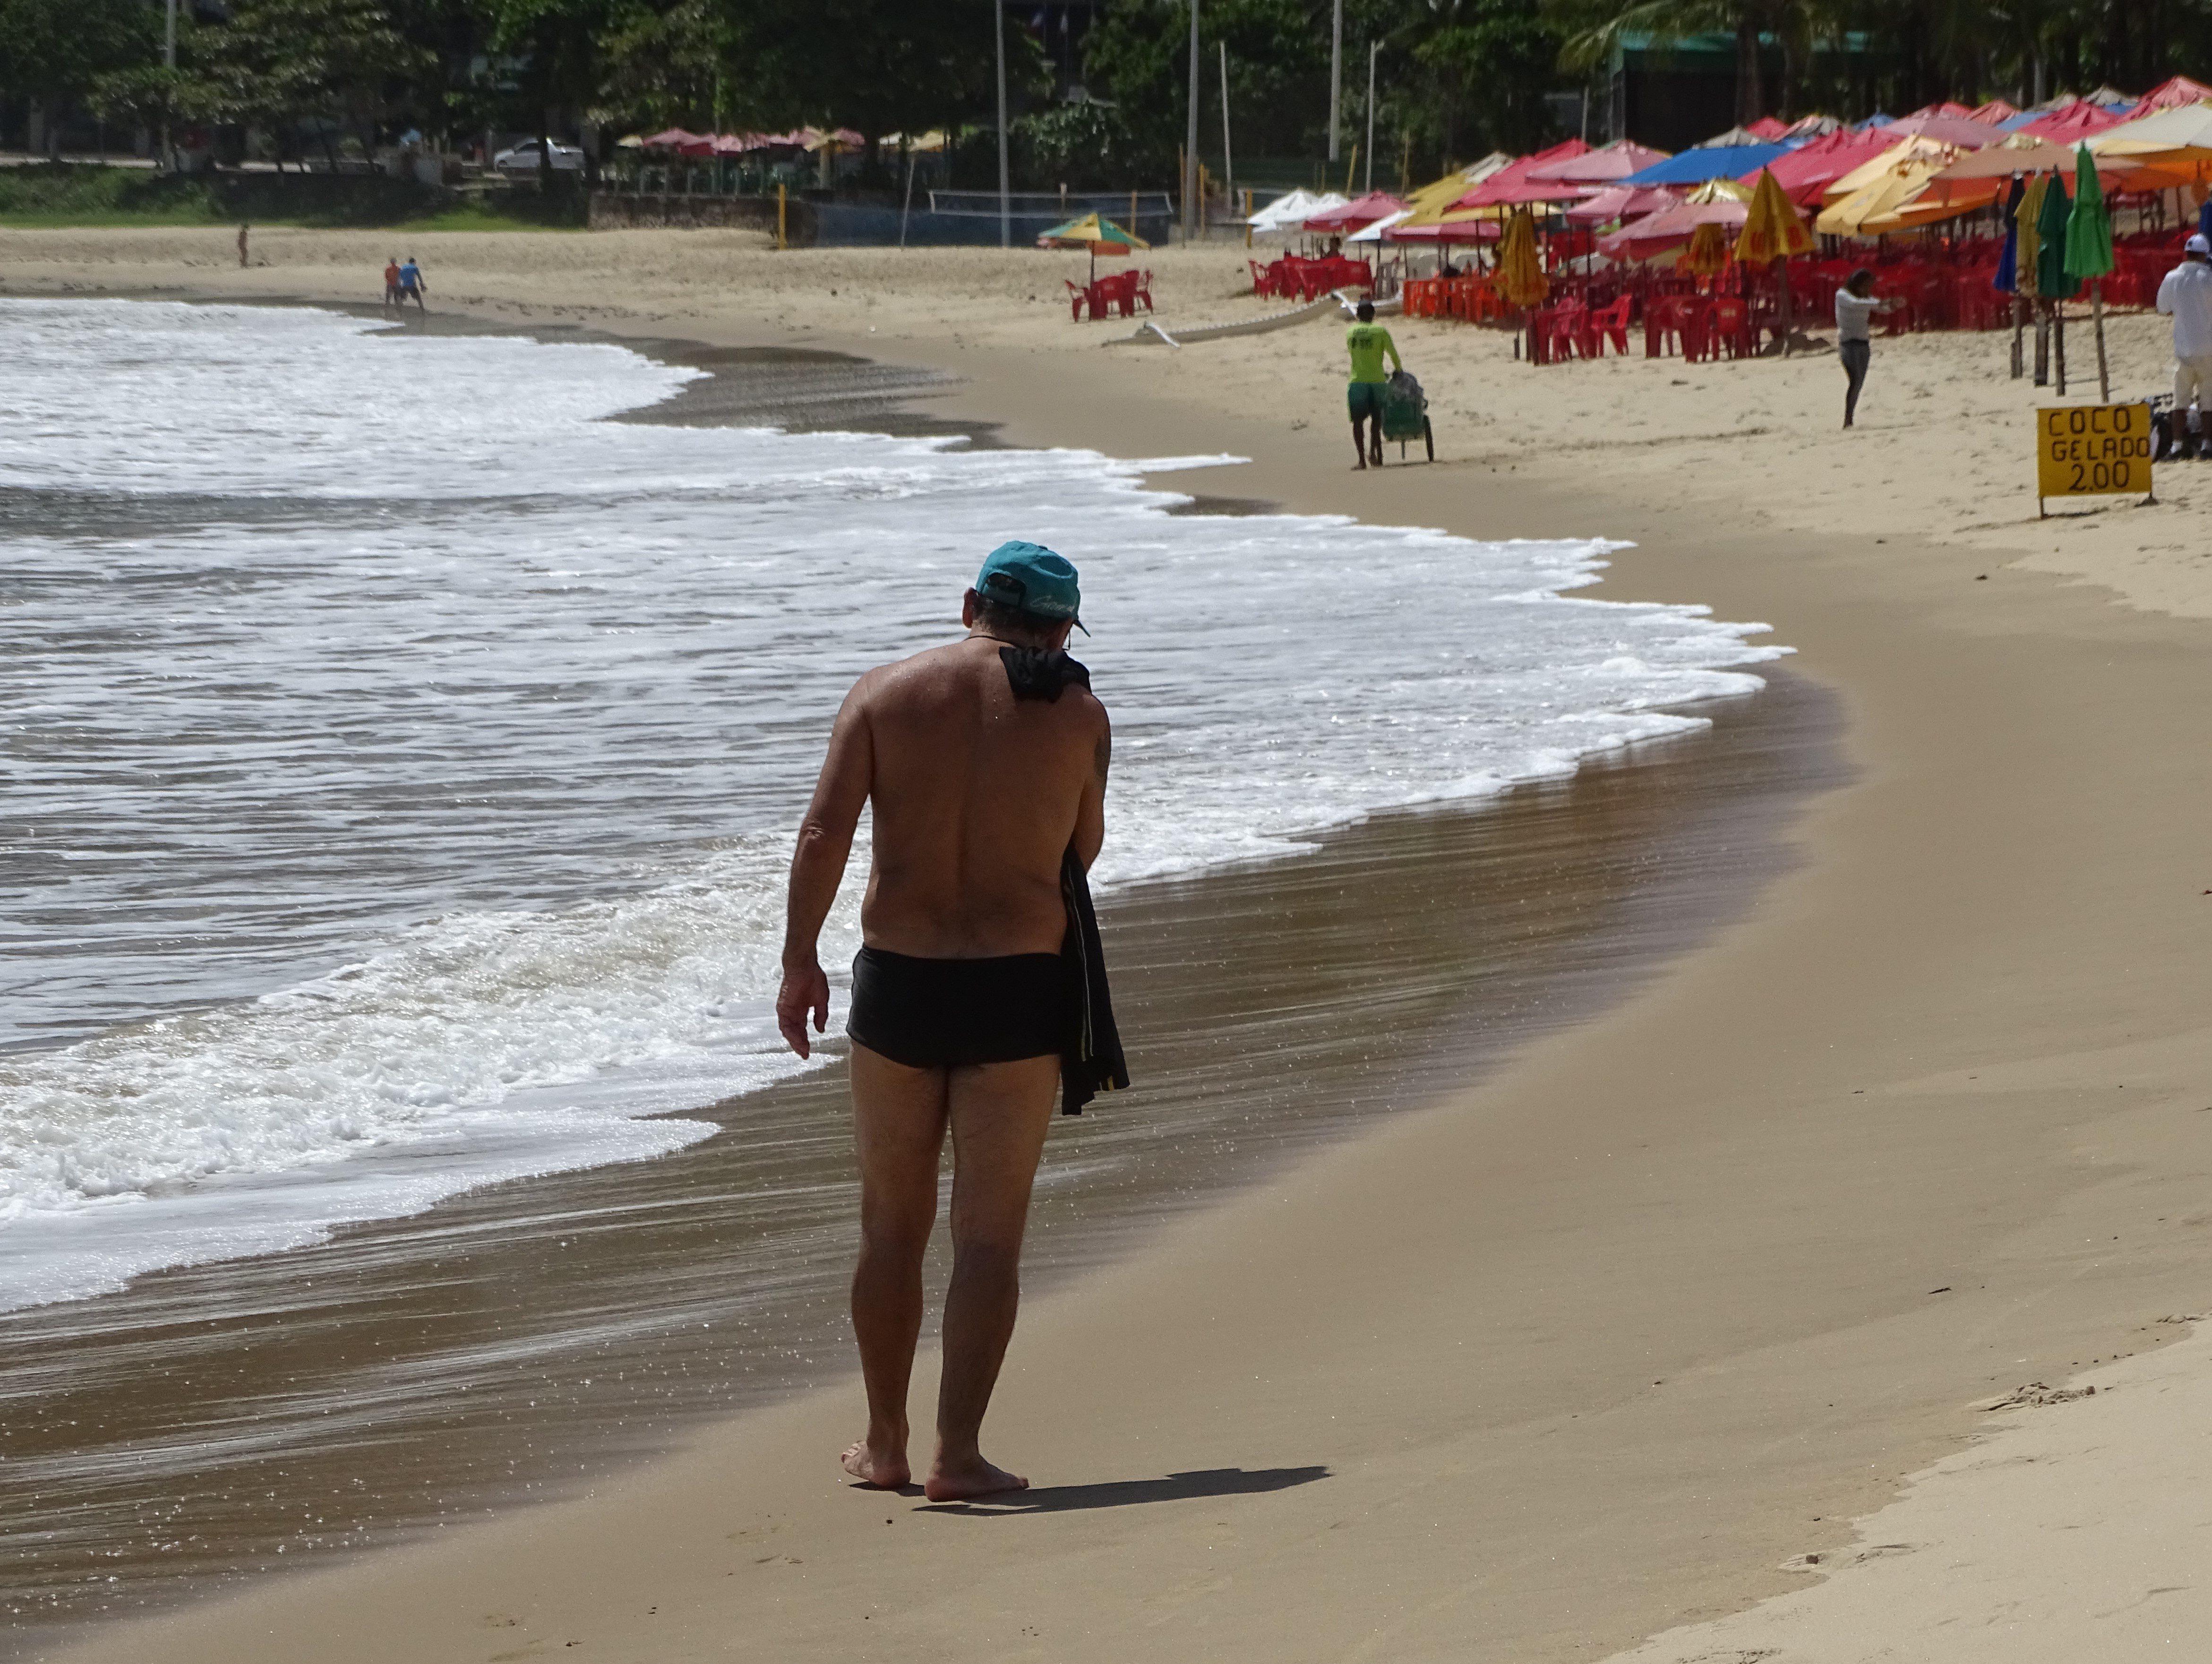 Fotografia de um homem caminhando na praia. À esquerda, as ondas fazem um semicírculo. Ao centro, o homem em destaque usa chapéu azul e tem a blusa pendurada no ombro. Ao fundo, na direita, algumas barracas de praia e um homem empurrando um carrinho de picolé